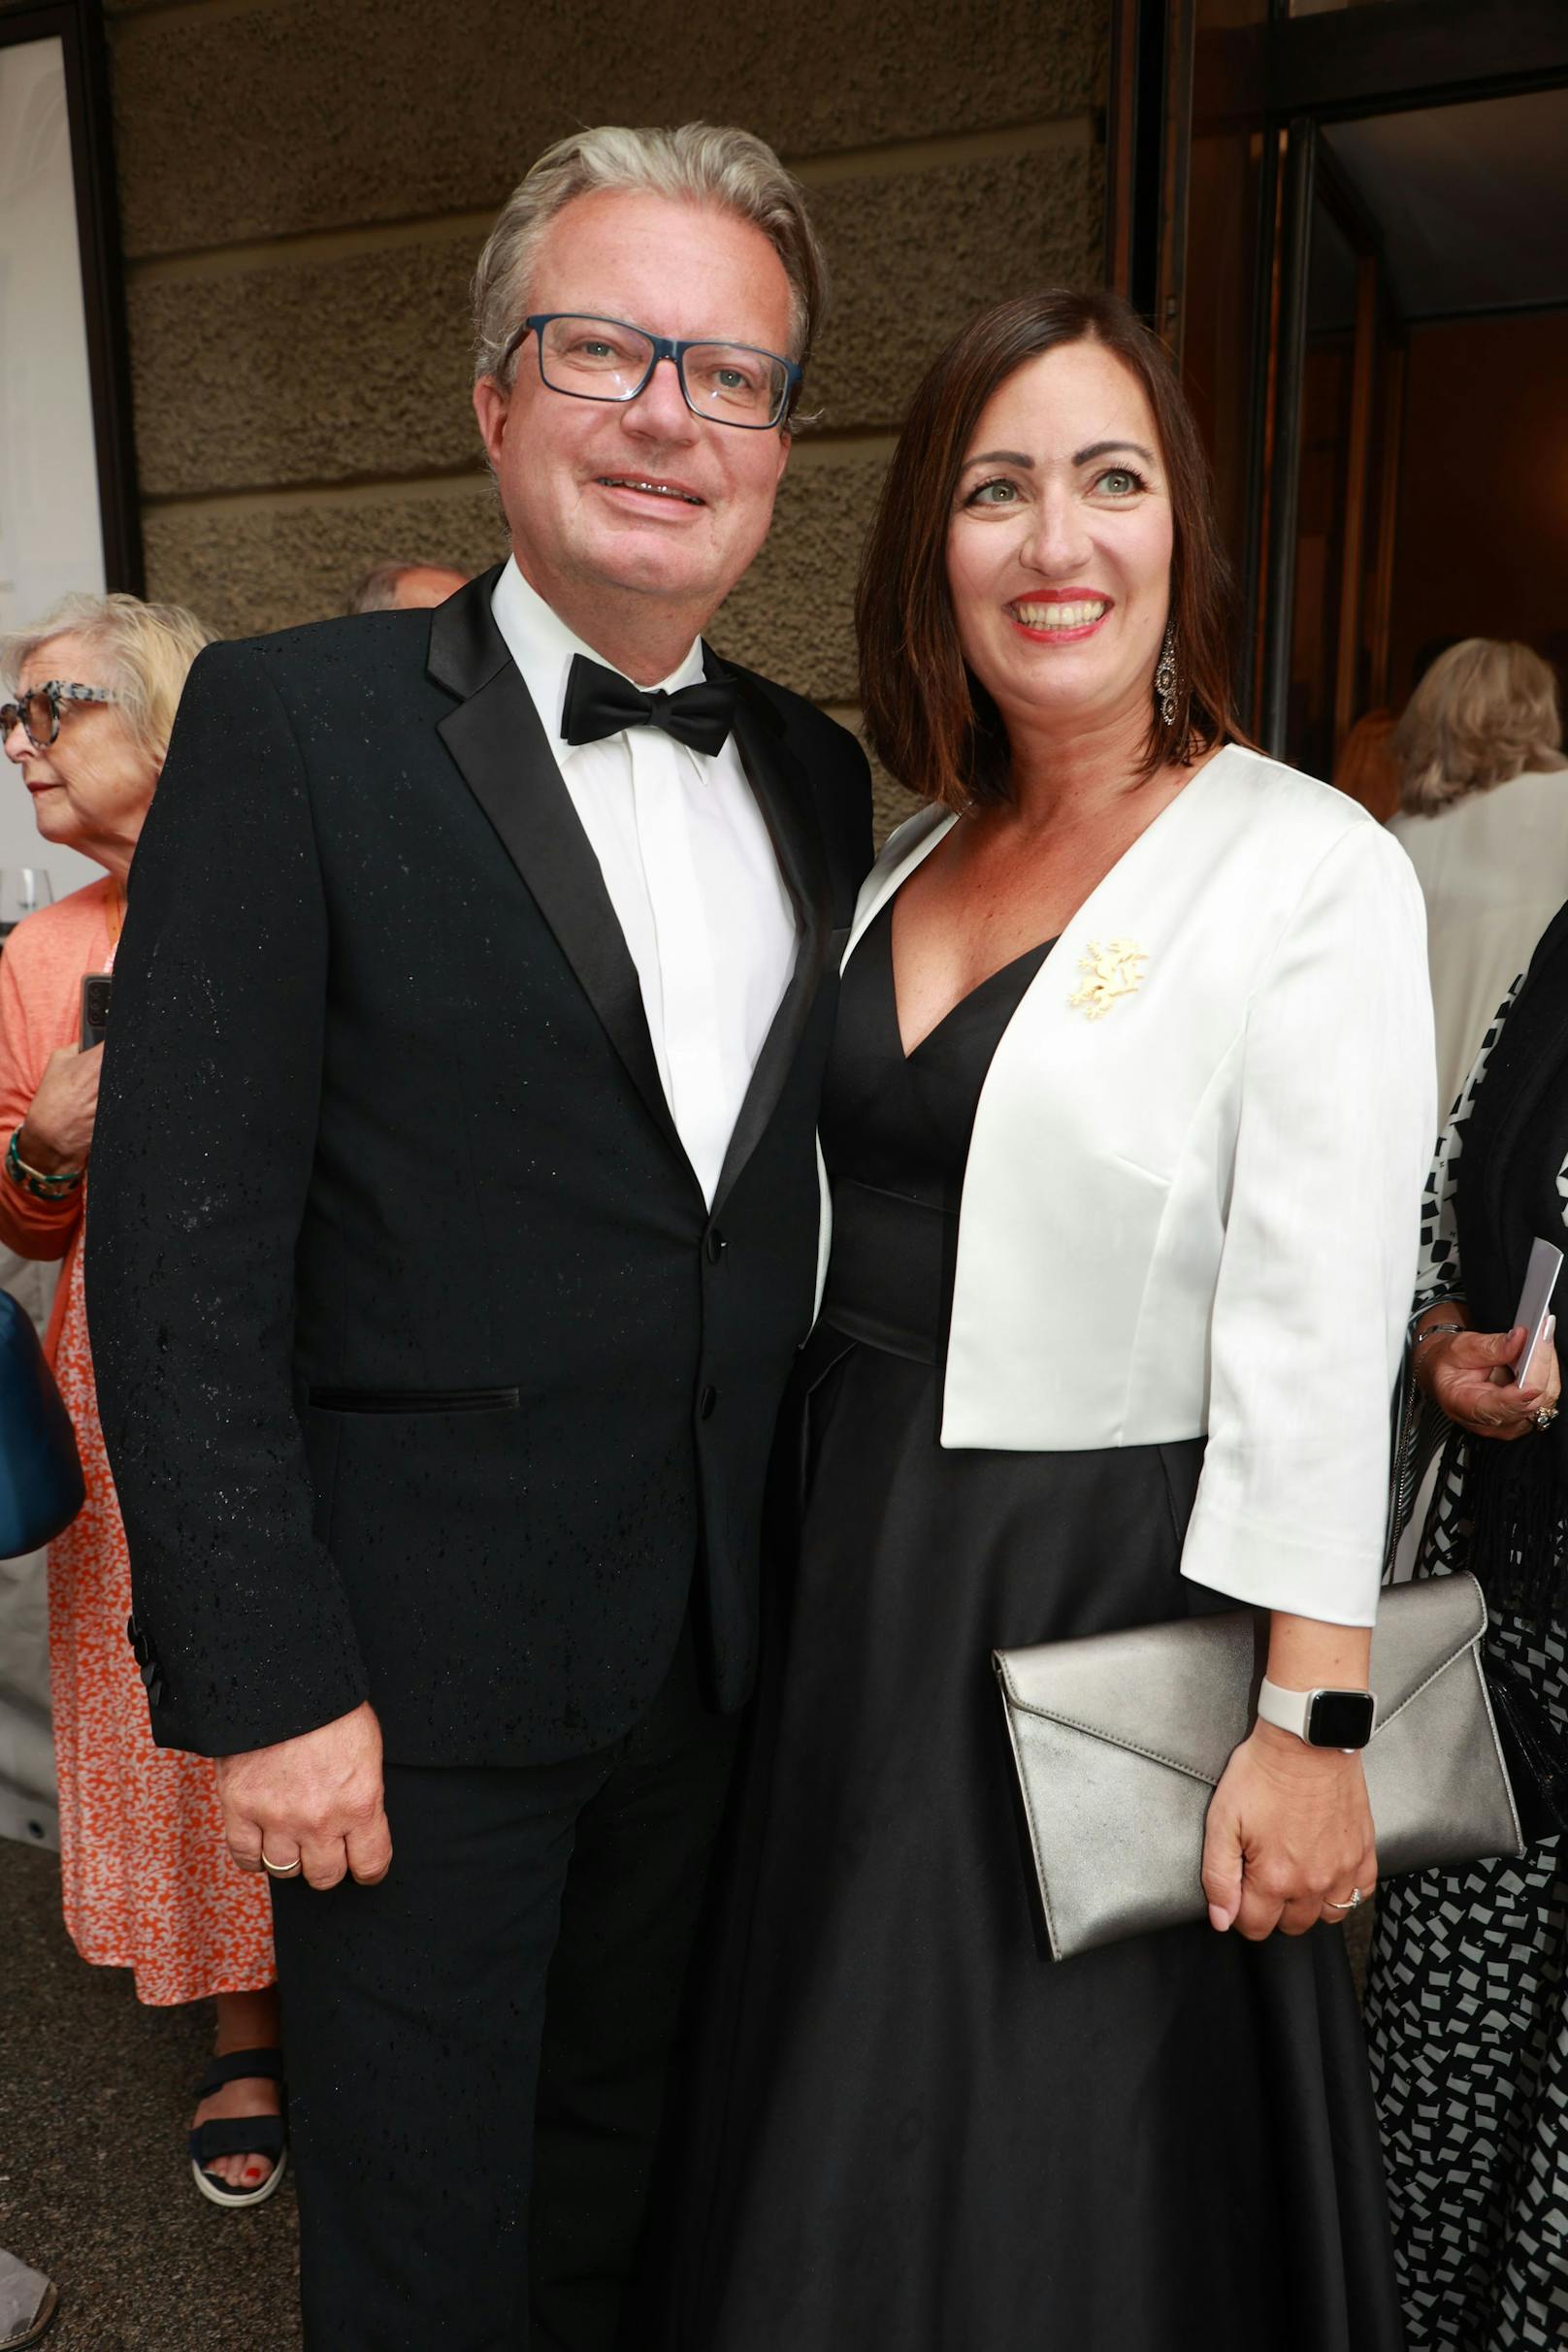 Der steirische Landeshauptmann Christopher Drexler mit Ehefrau Iris